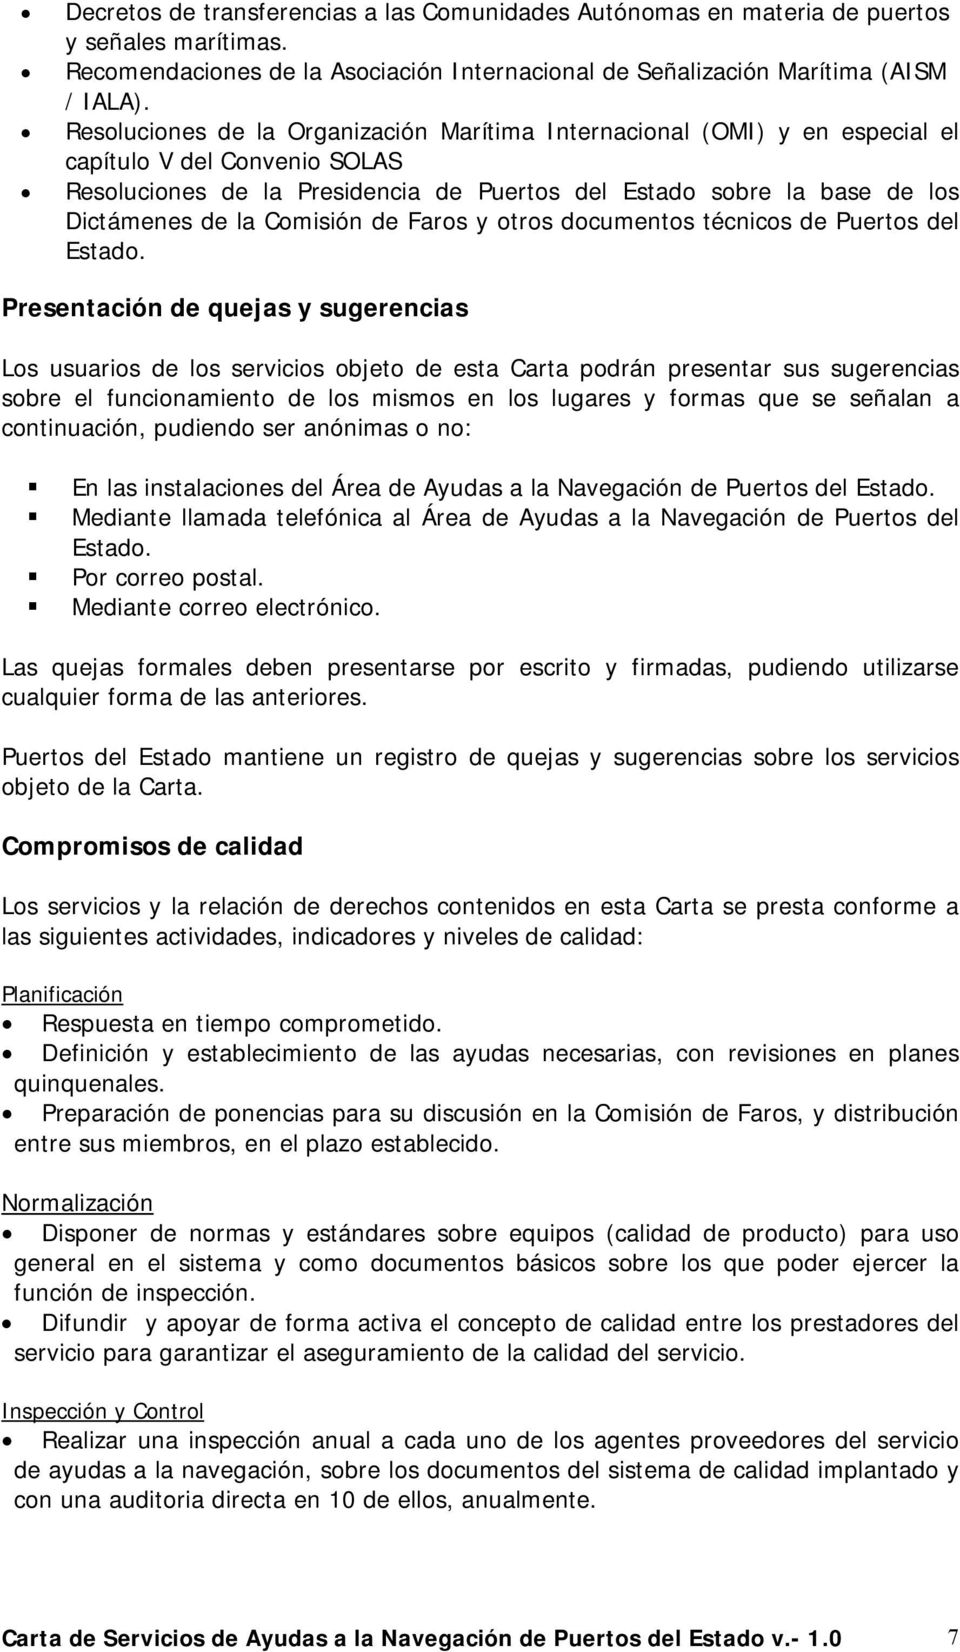 Comisión de Faros y otros documentos técnicos de Puertos del Estado.